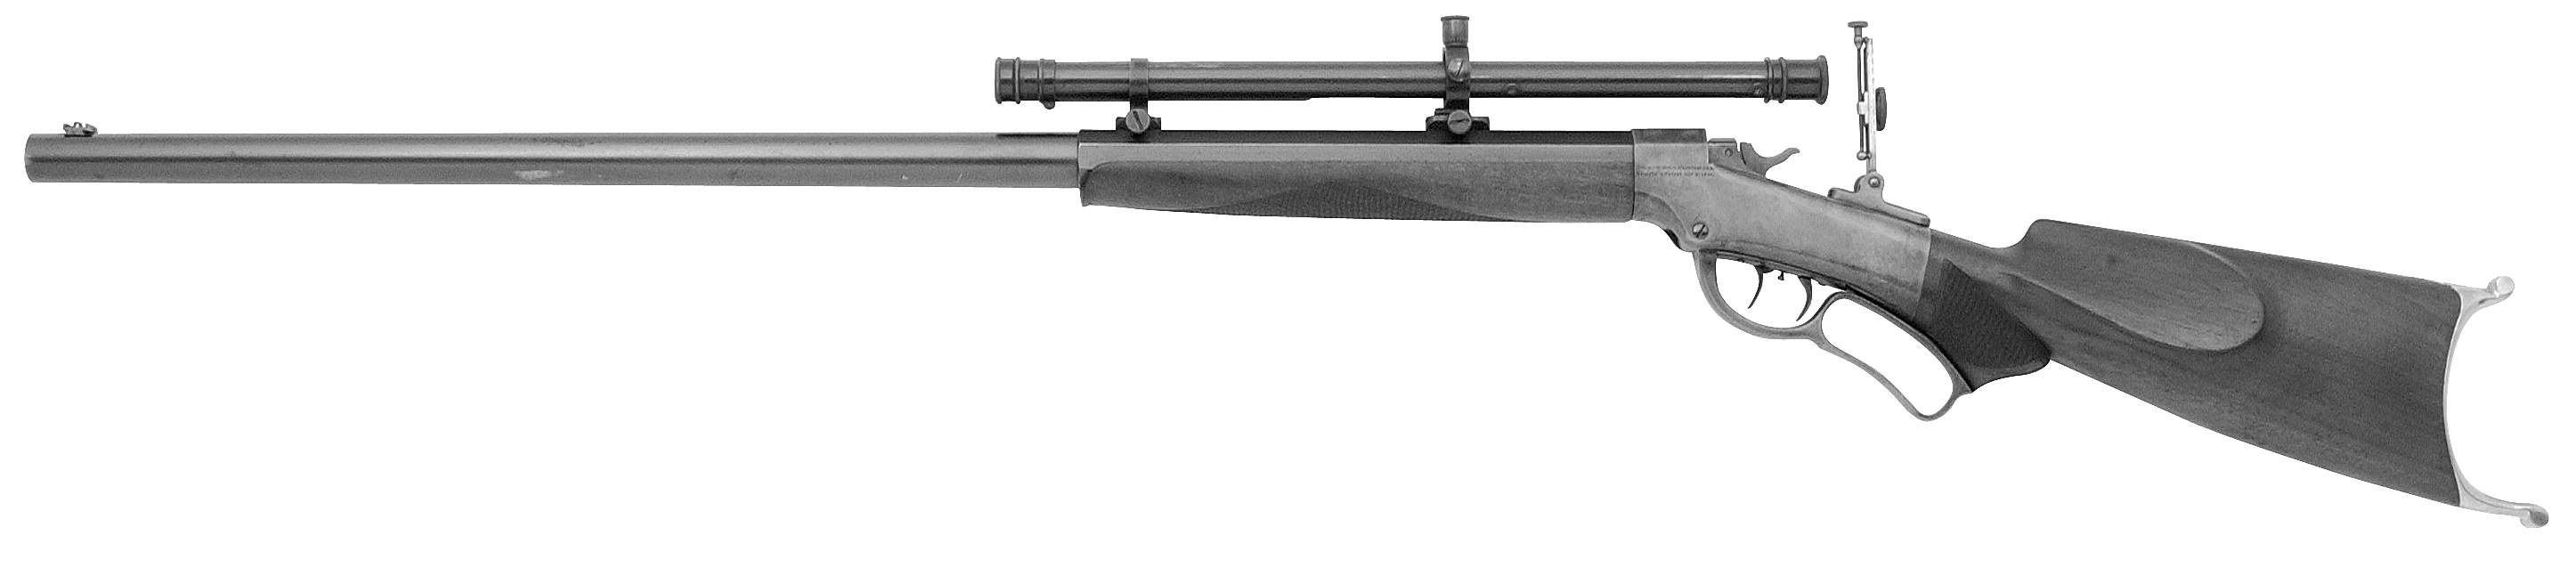 Ballard No. 10 Schuetzen Junior Rifle